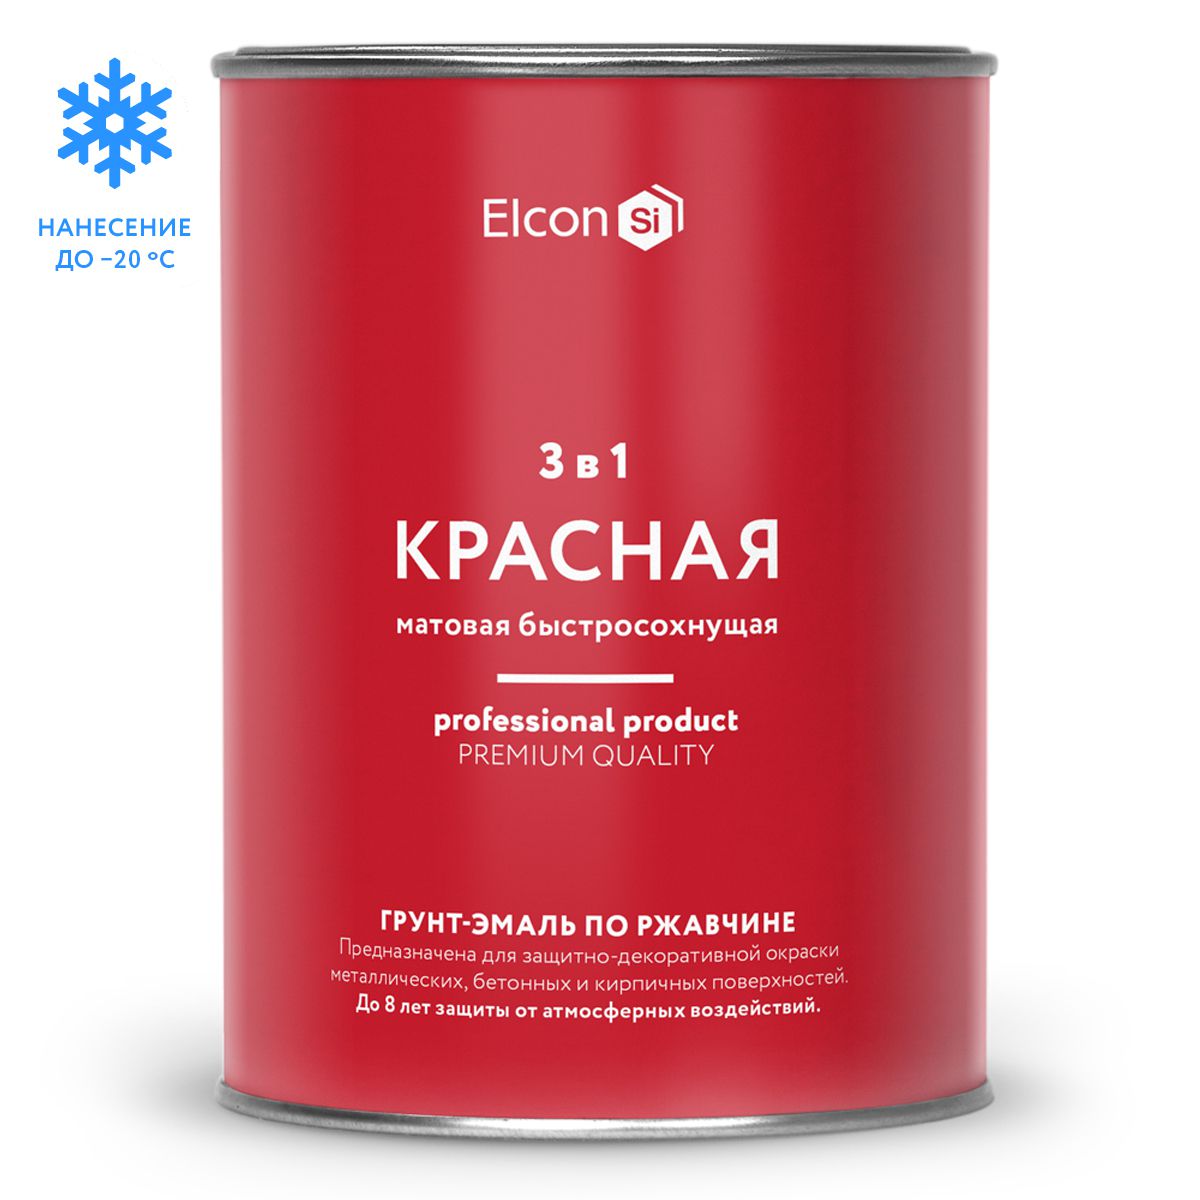 Грунт-эмаль Elcon по ржавчине, Elcon 0,8 кг, красная